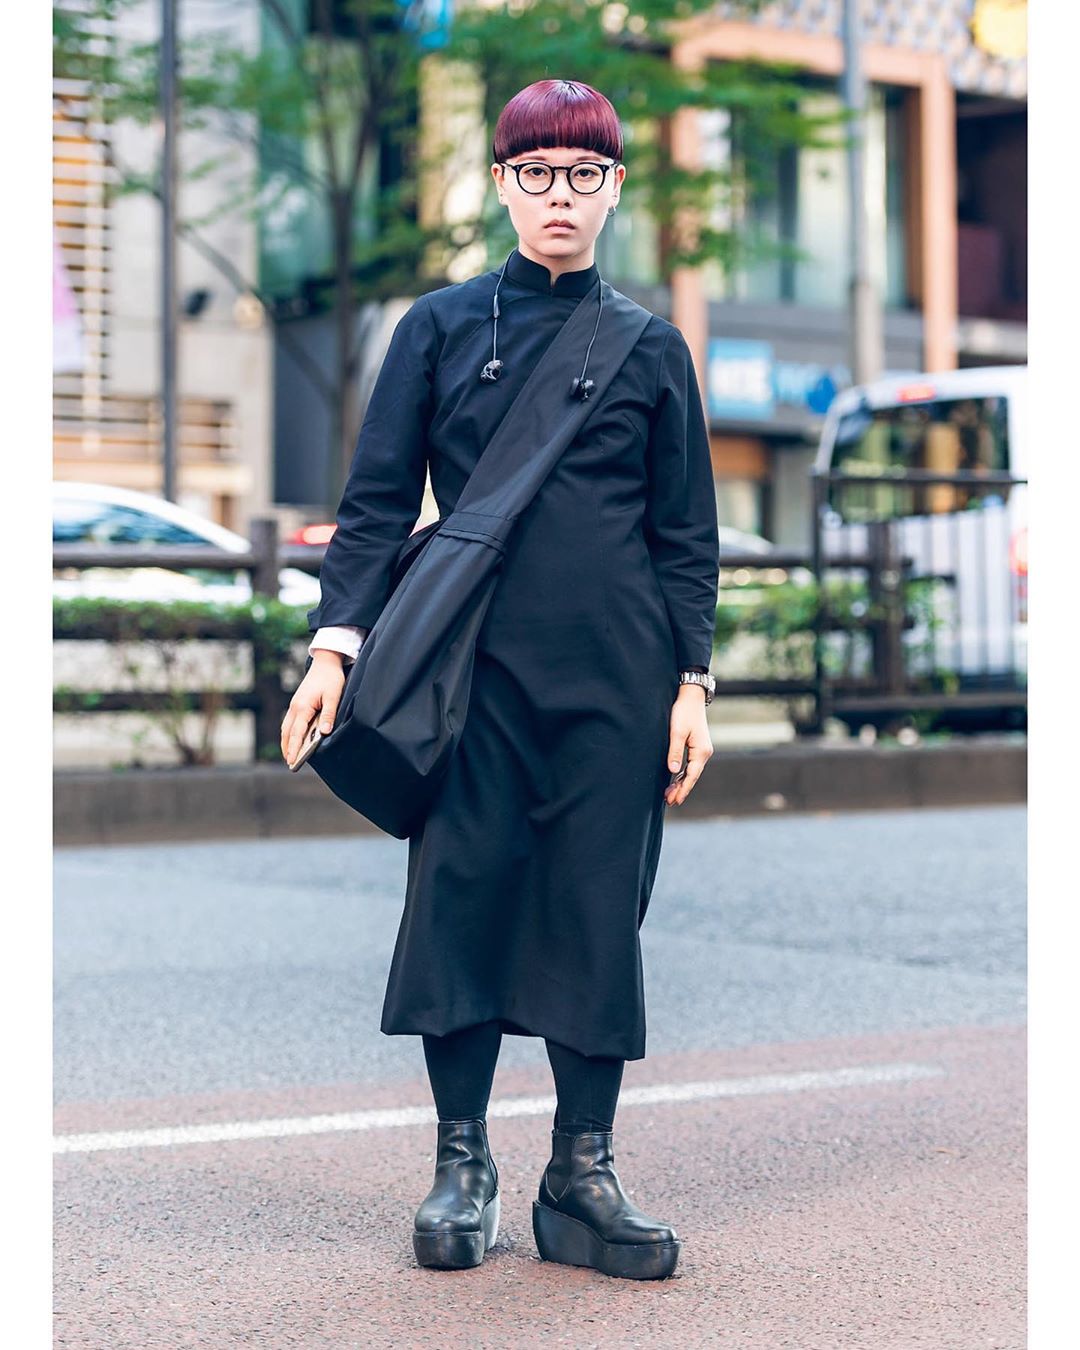 Tokyo Fashion: Ruka wearing a monochrome minimalist Japanese street ...